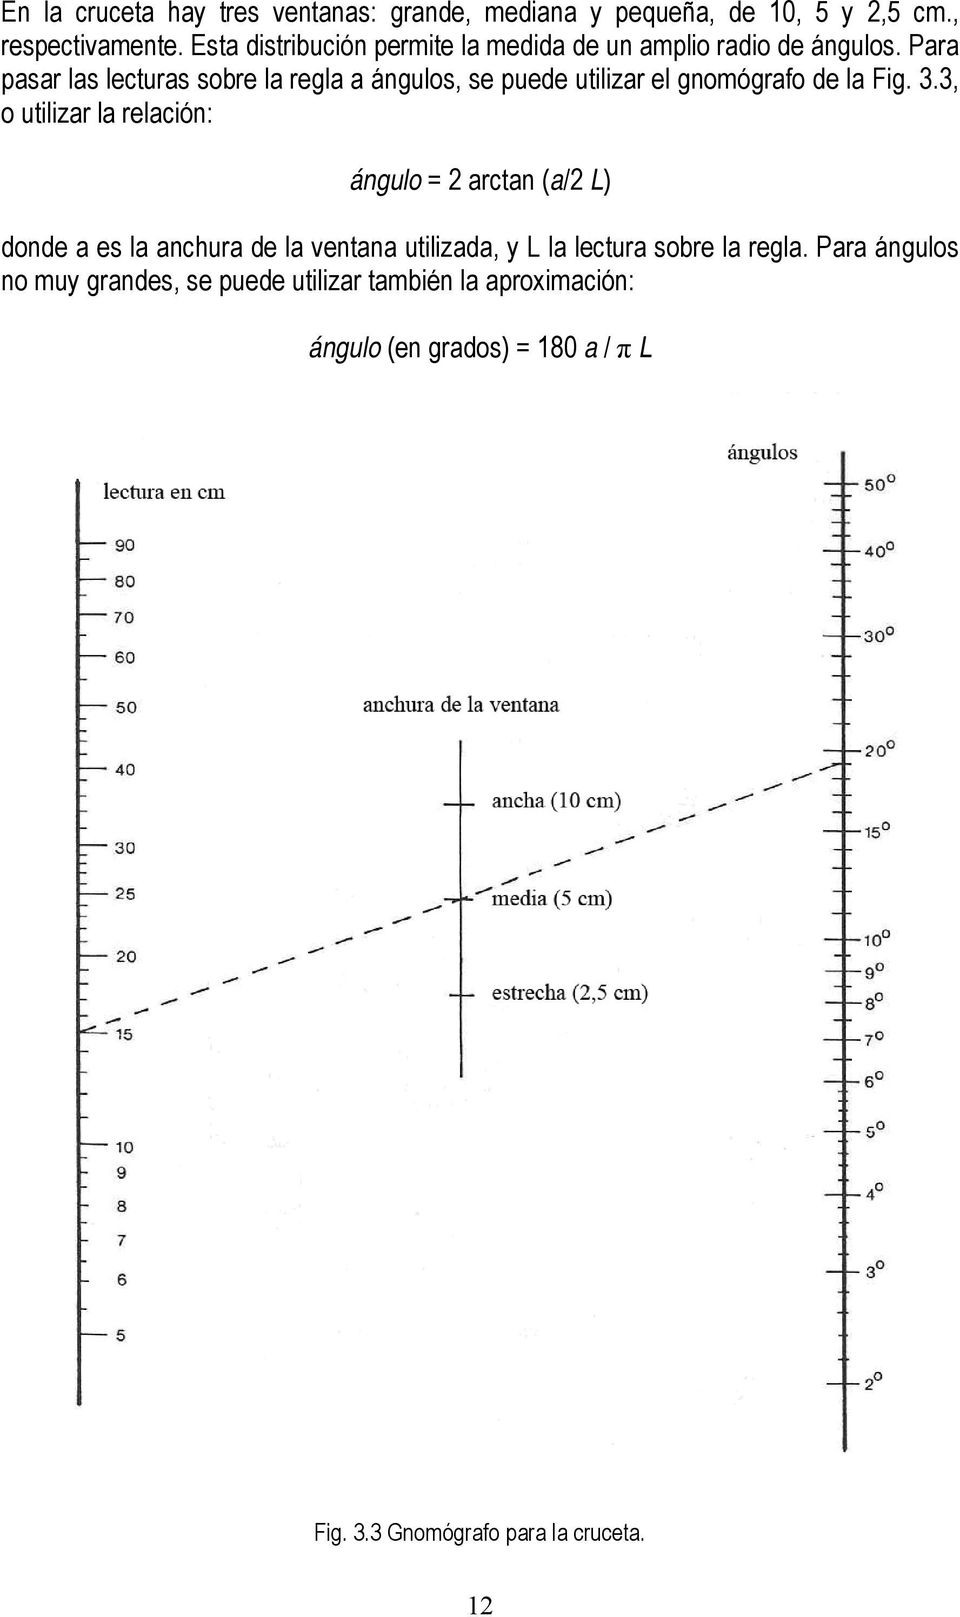 Para pasar las lecturas sobre la regla a ángulos, se puede utilizar el gnomógrafo de la Fig. 3.